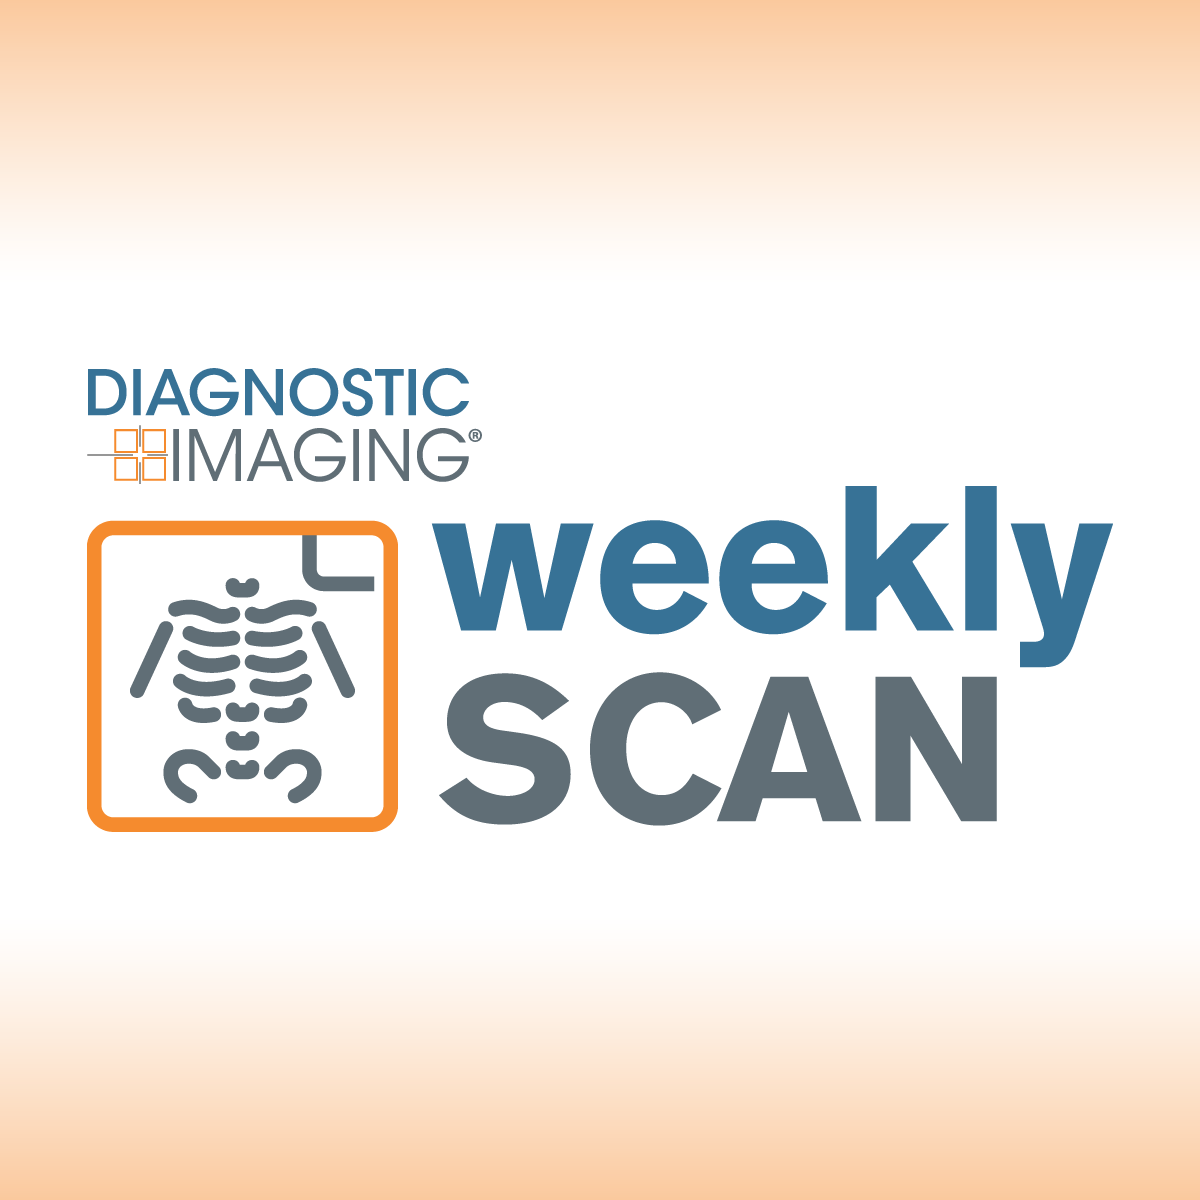 Diagnostic Imaging's Weekly Scan: June 11-June 17